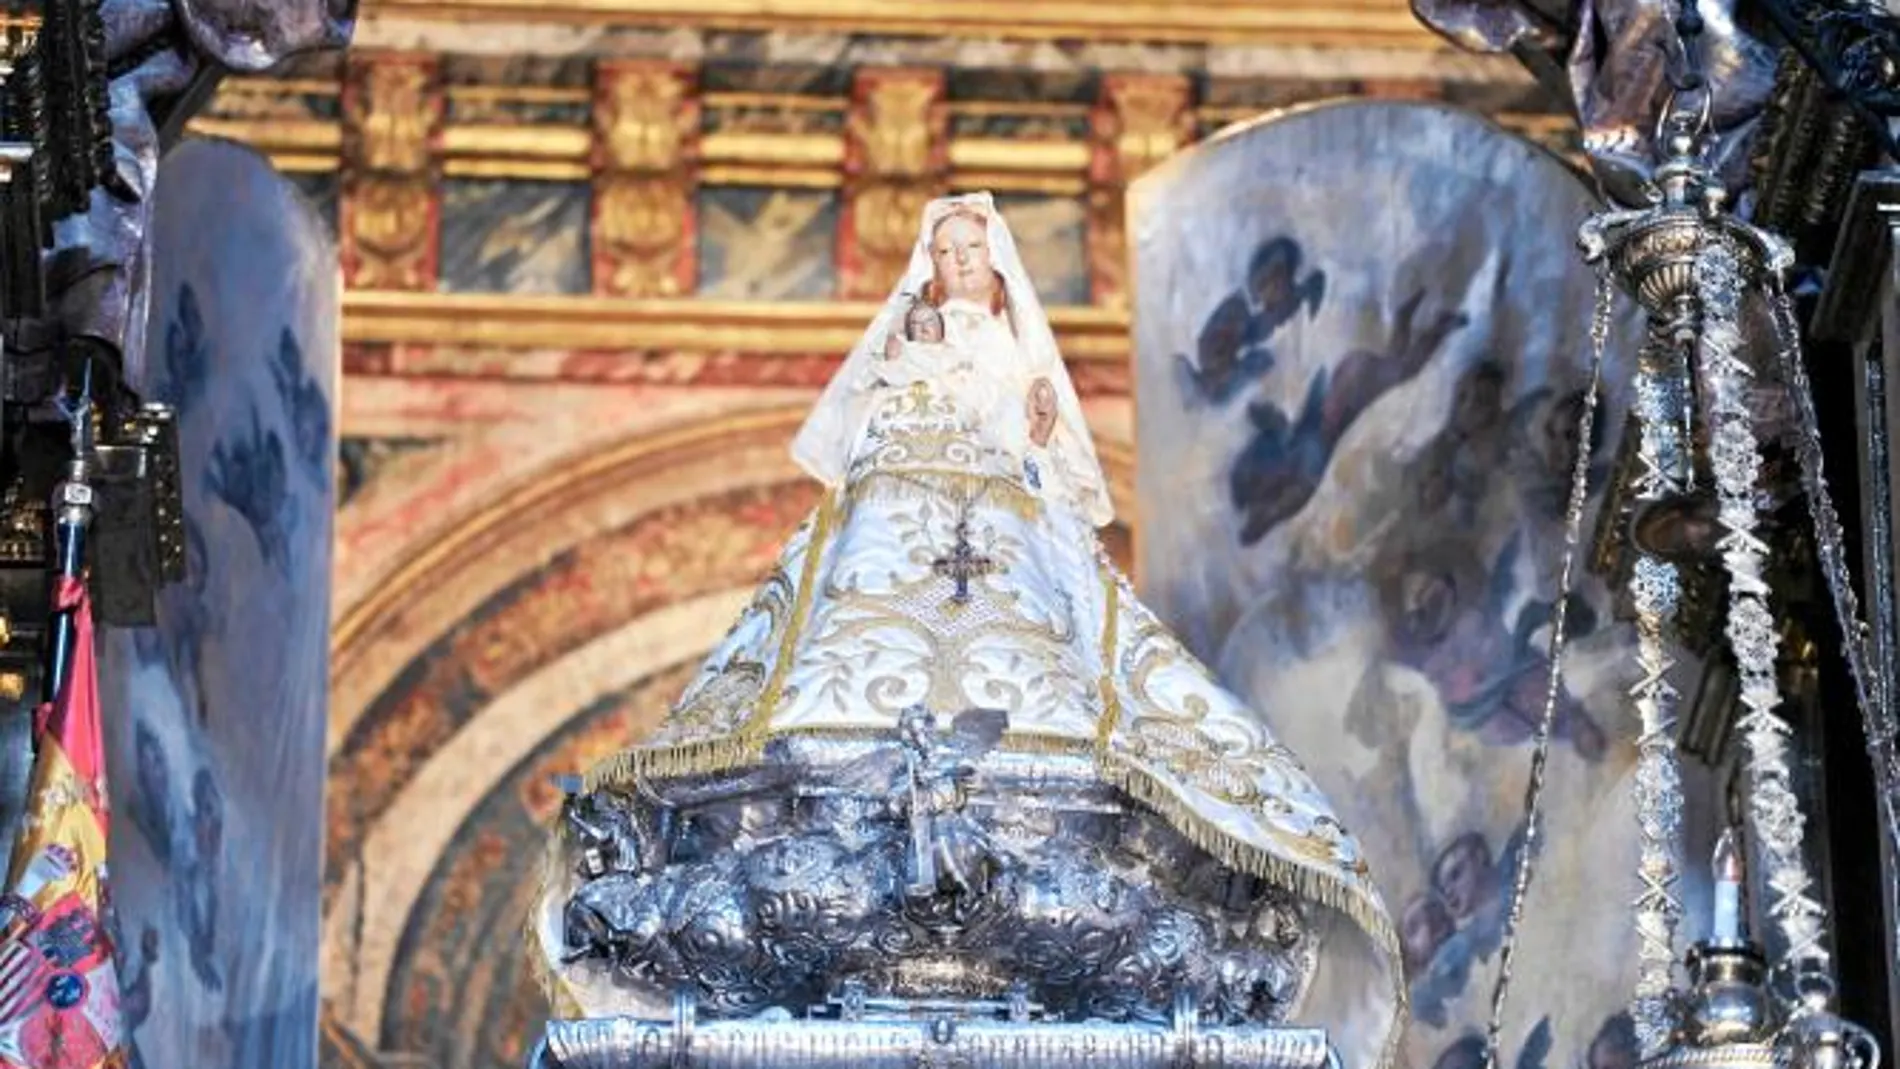 Roban la corona y efectos de la Virgen de la Fuencisla patrona de Segovia